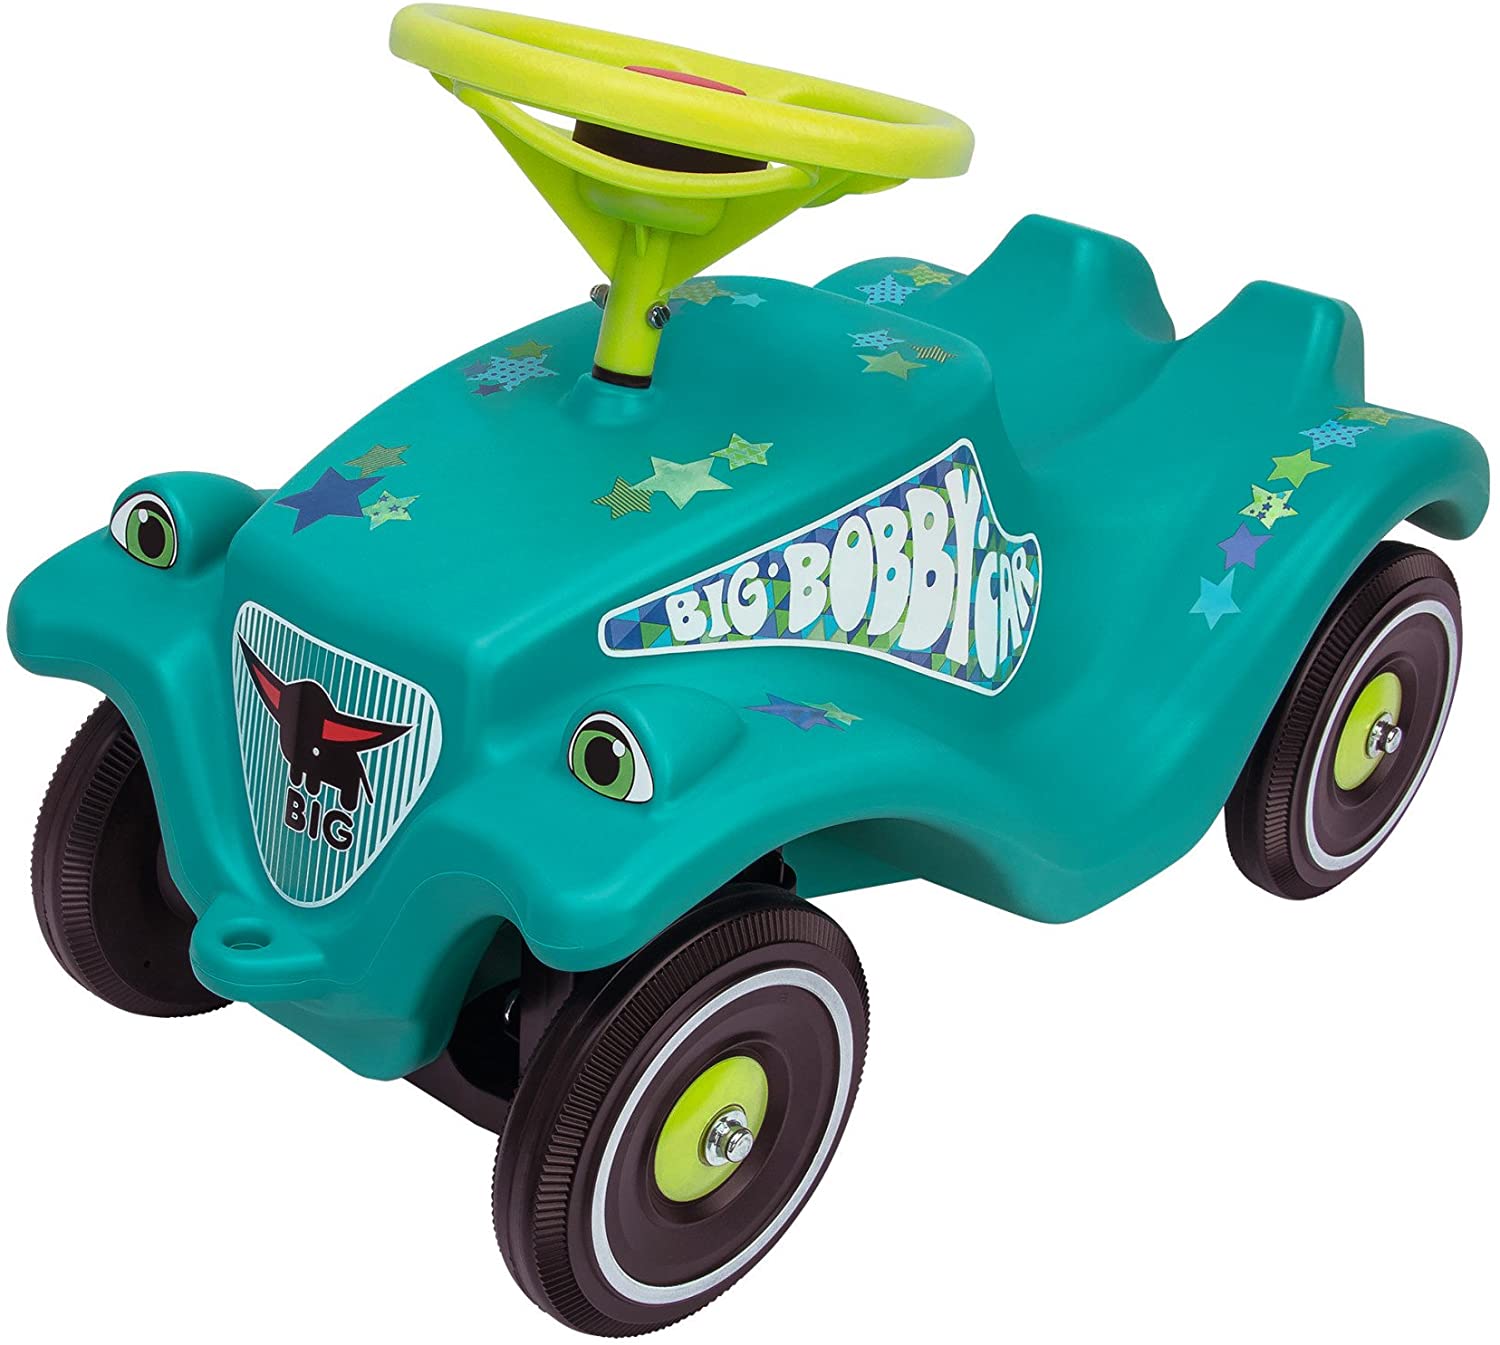 Big Spielwarenfabrik Kids Ride-On Car, Single, Turquoise